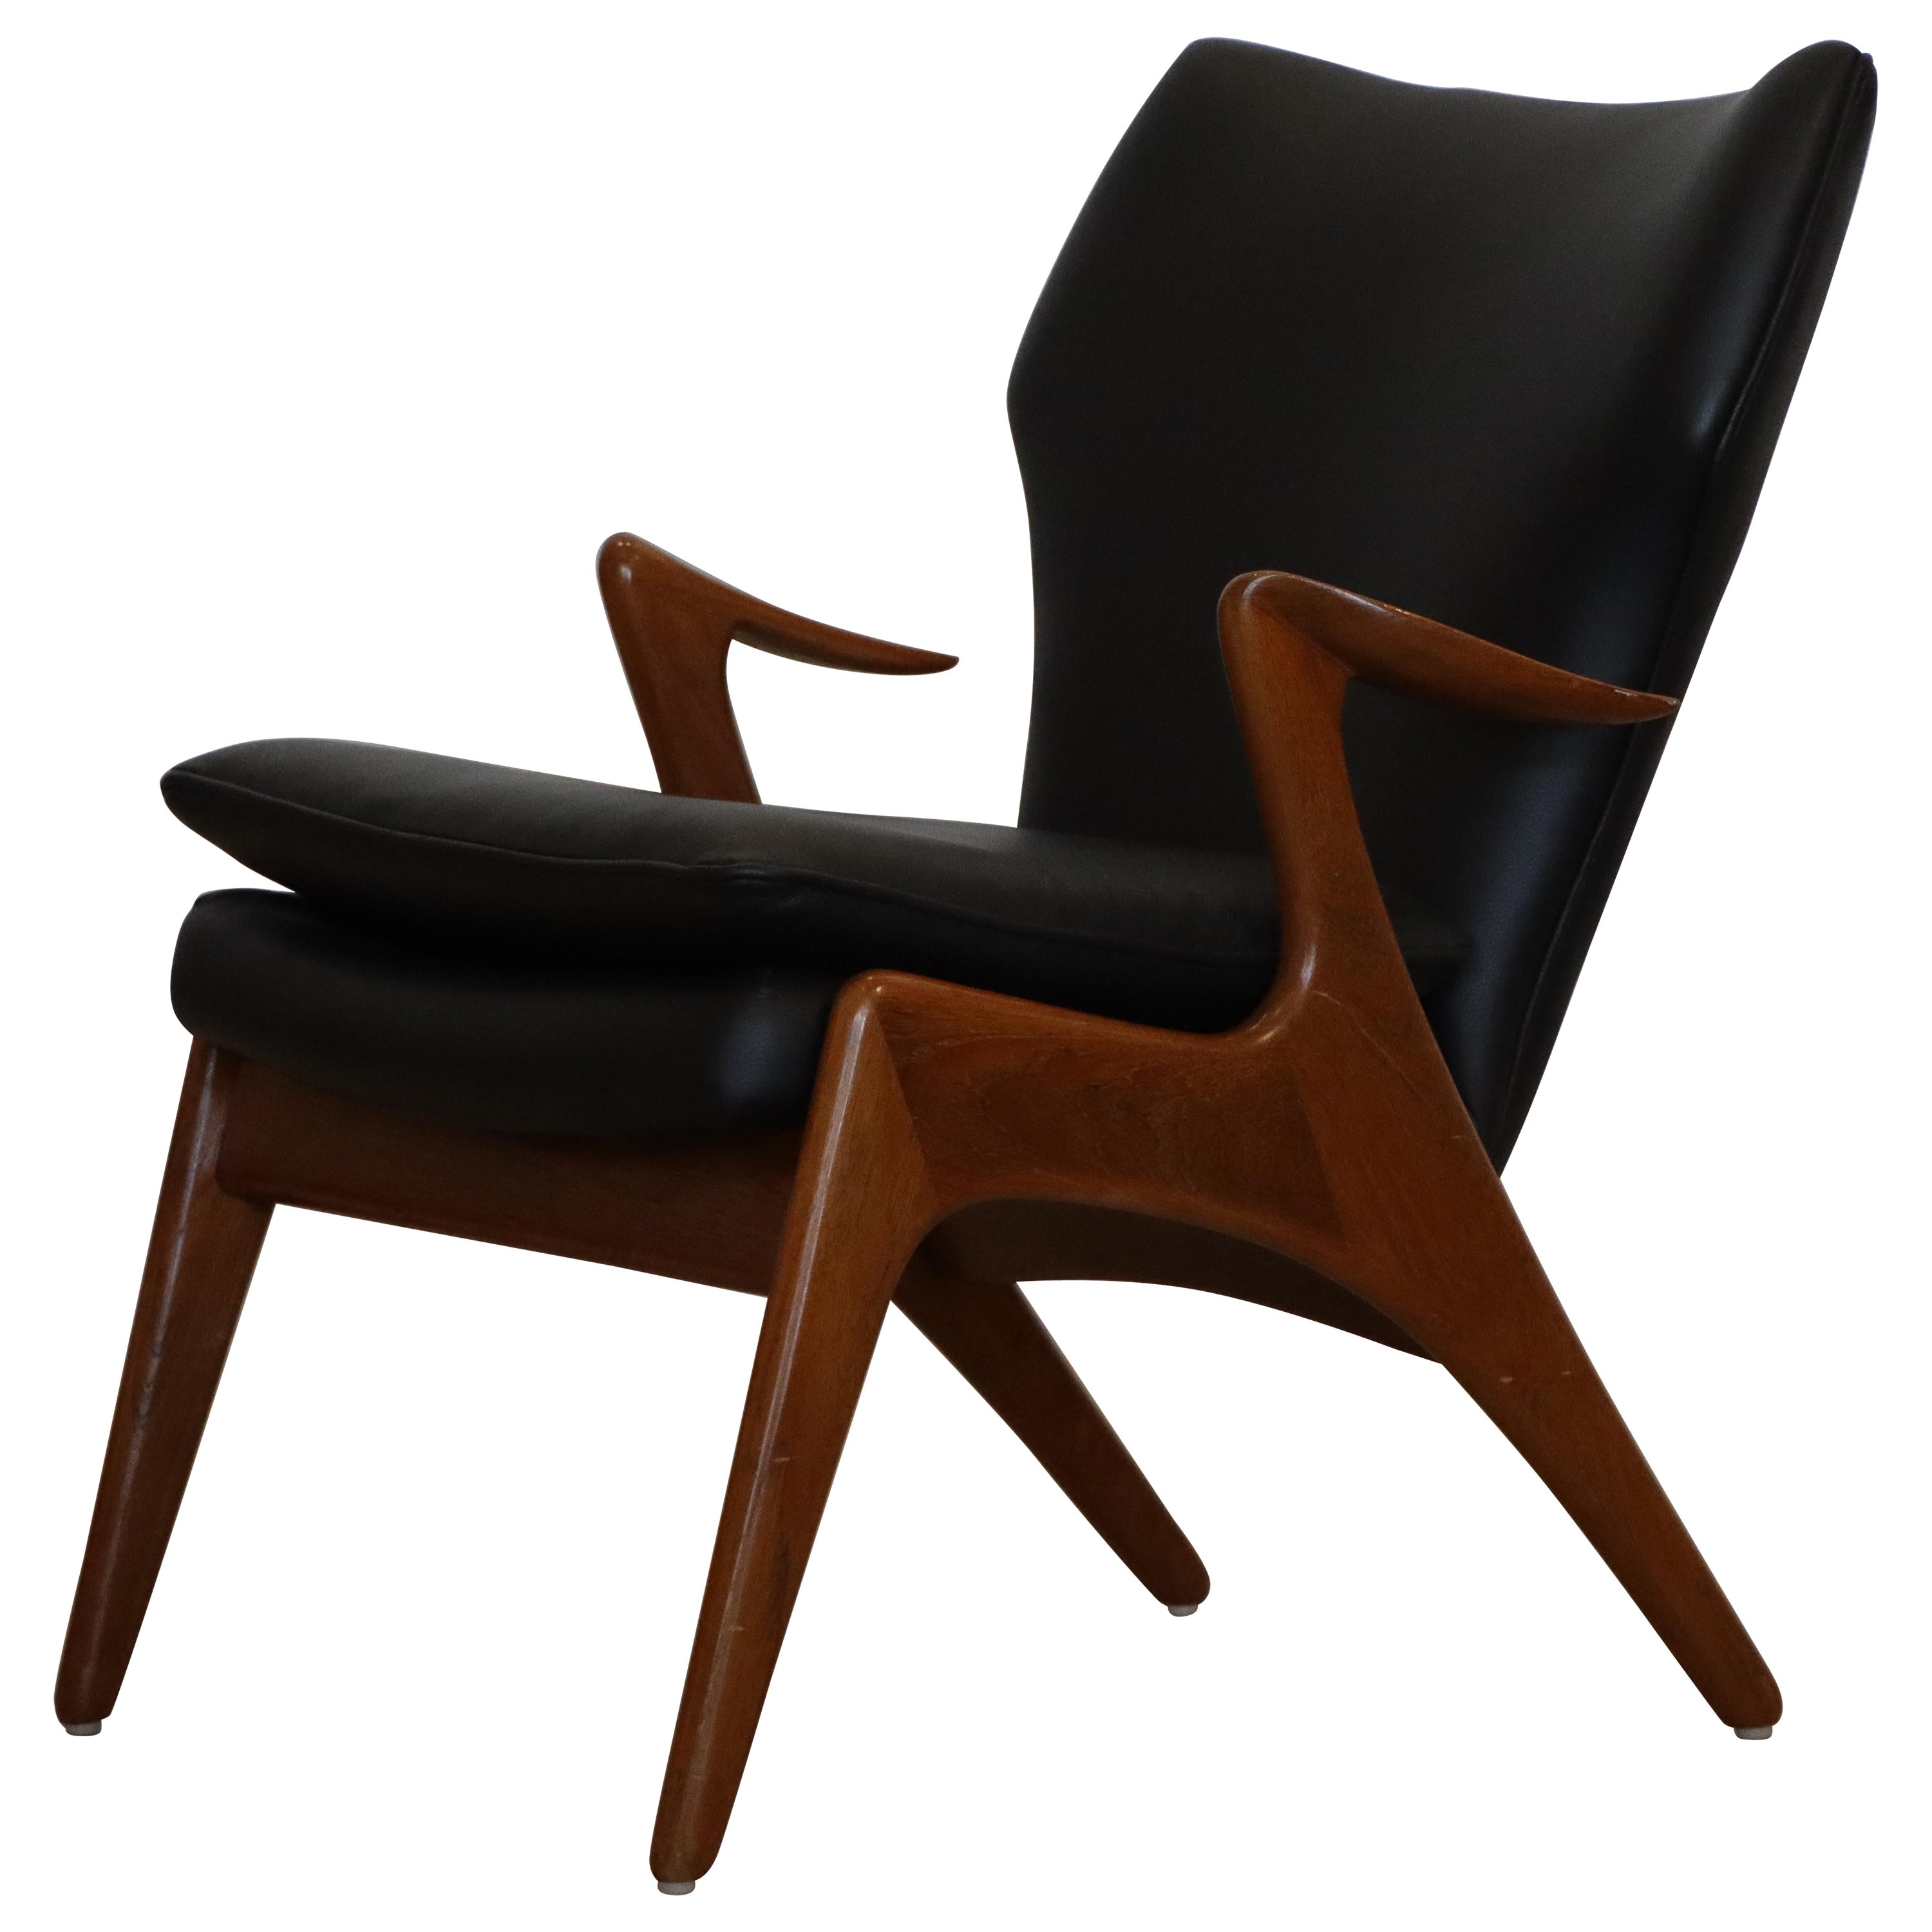 Sculptural Danish Lounge Chair by Kurt Østervig for Rolschau